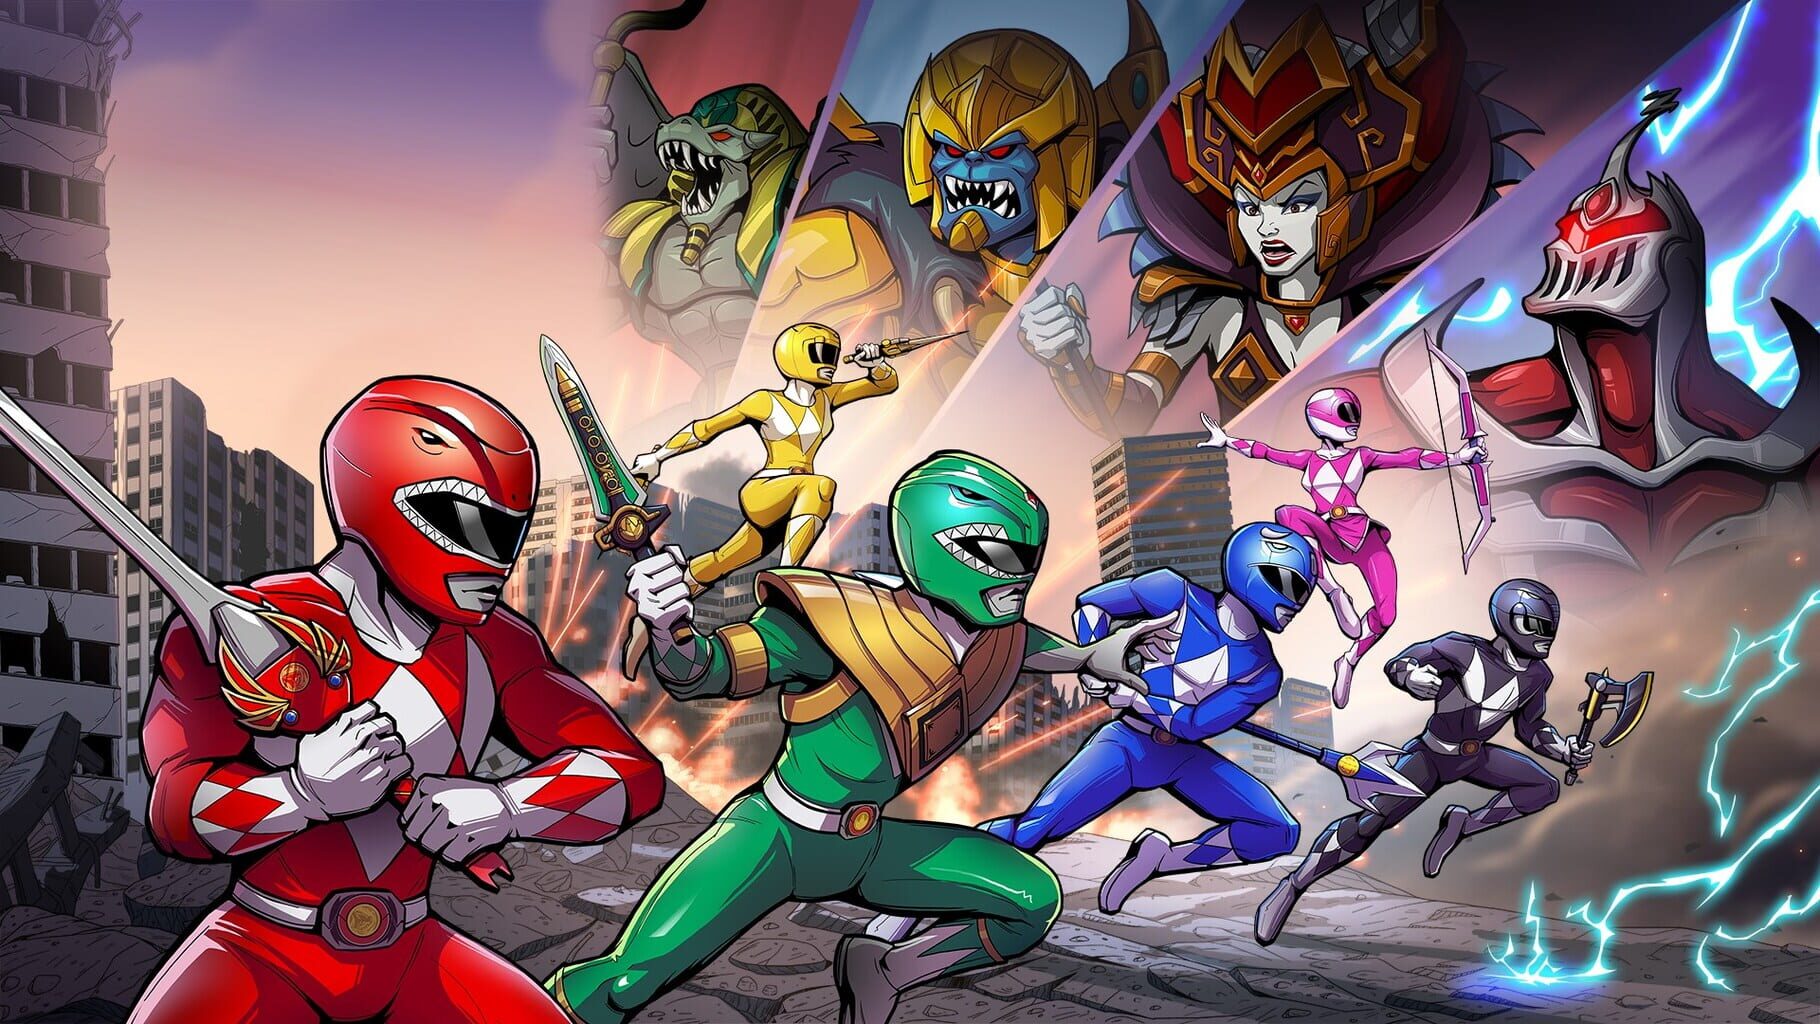 Artwork for Saban's Mighty Morphin Power Rangers: Mega Battle